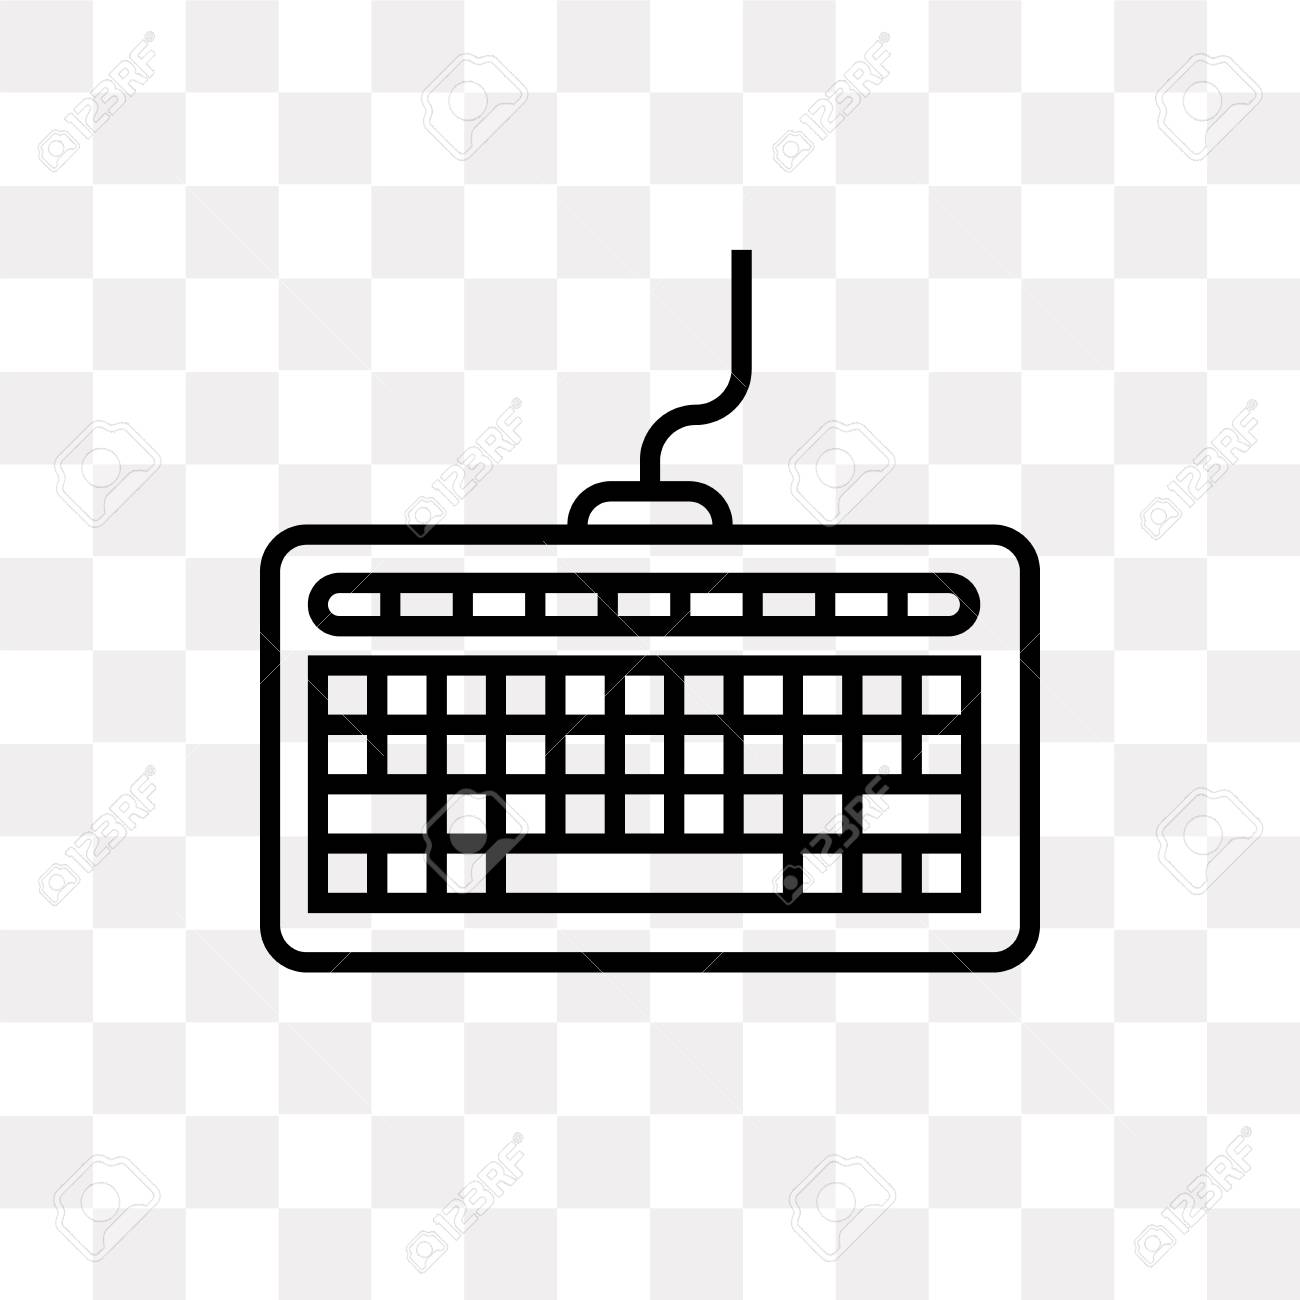 Keyboard Logo Png - KibrisPDR